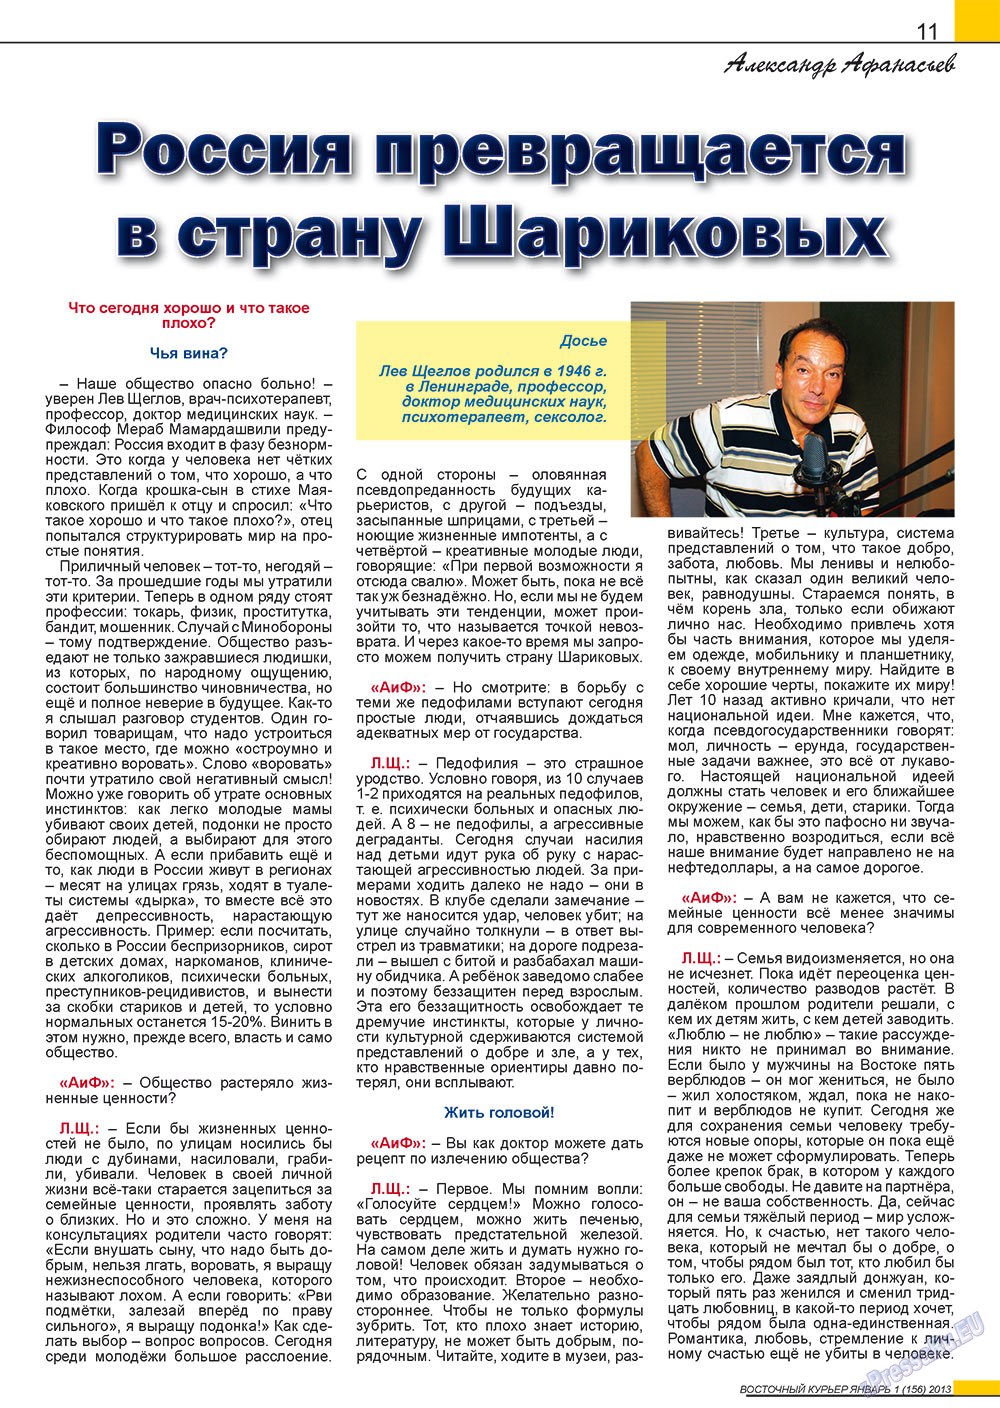 Восточный курьер (журнал). 2013 год, номер 1, стр. 11